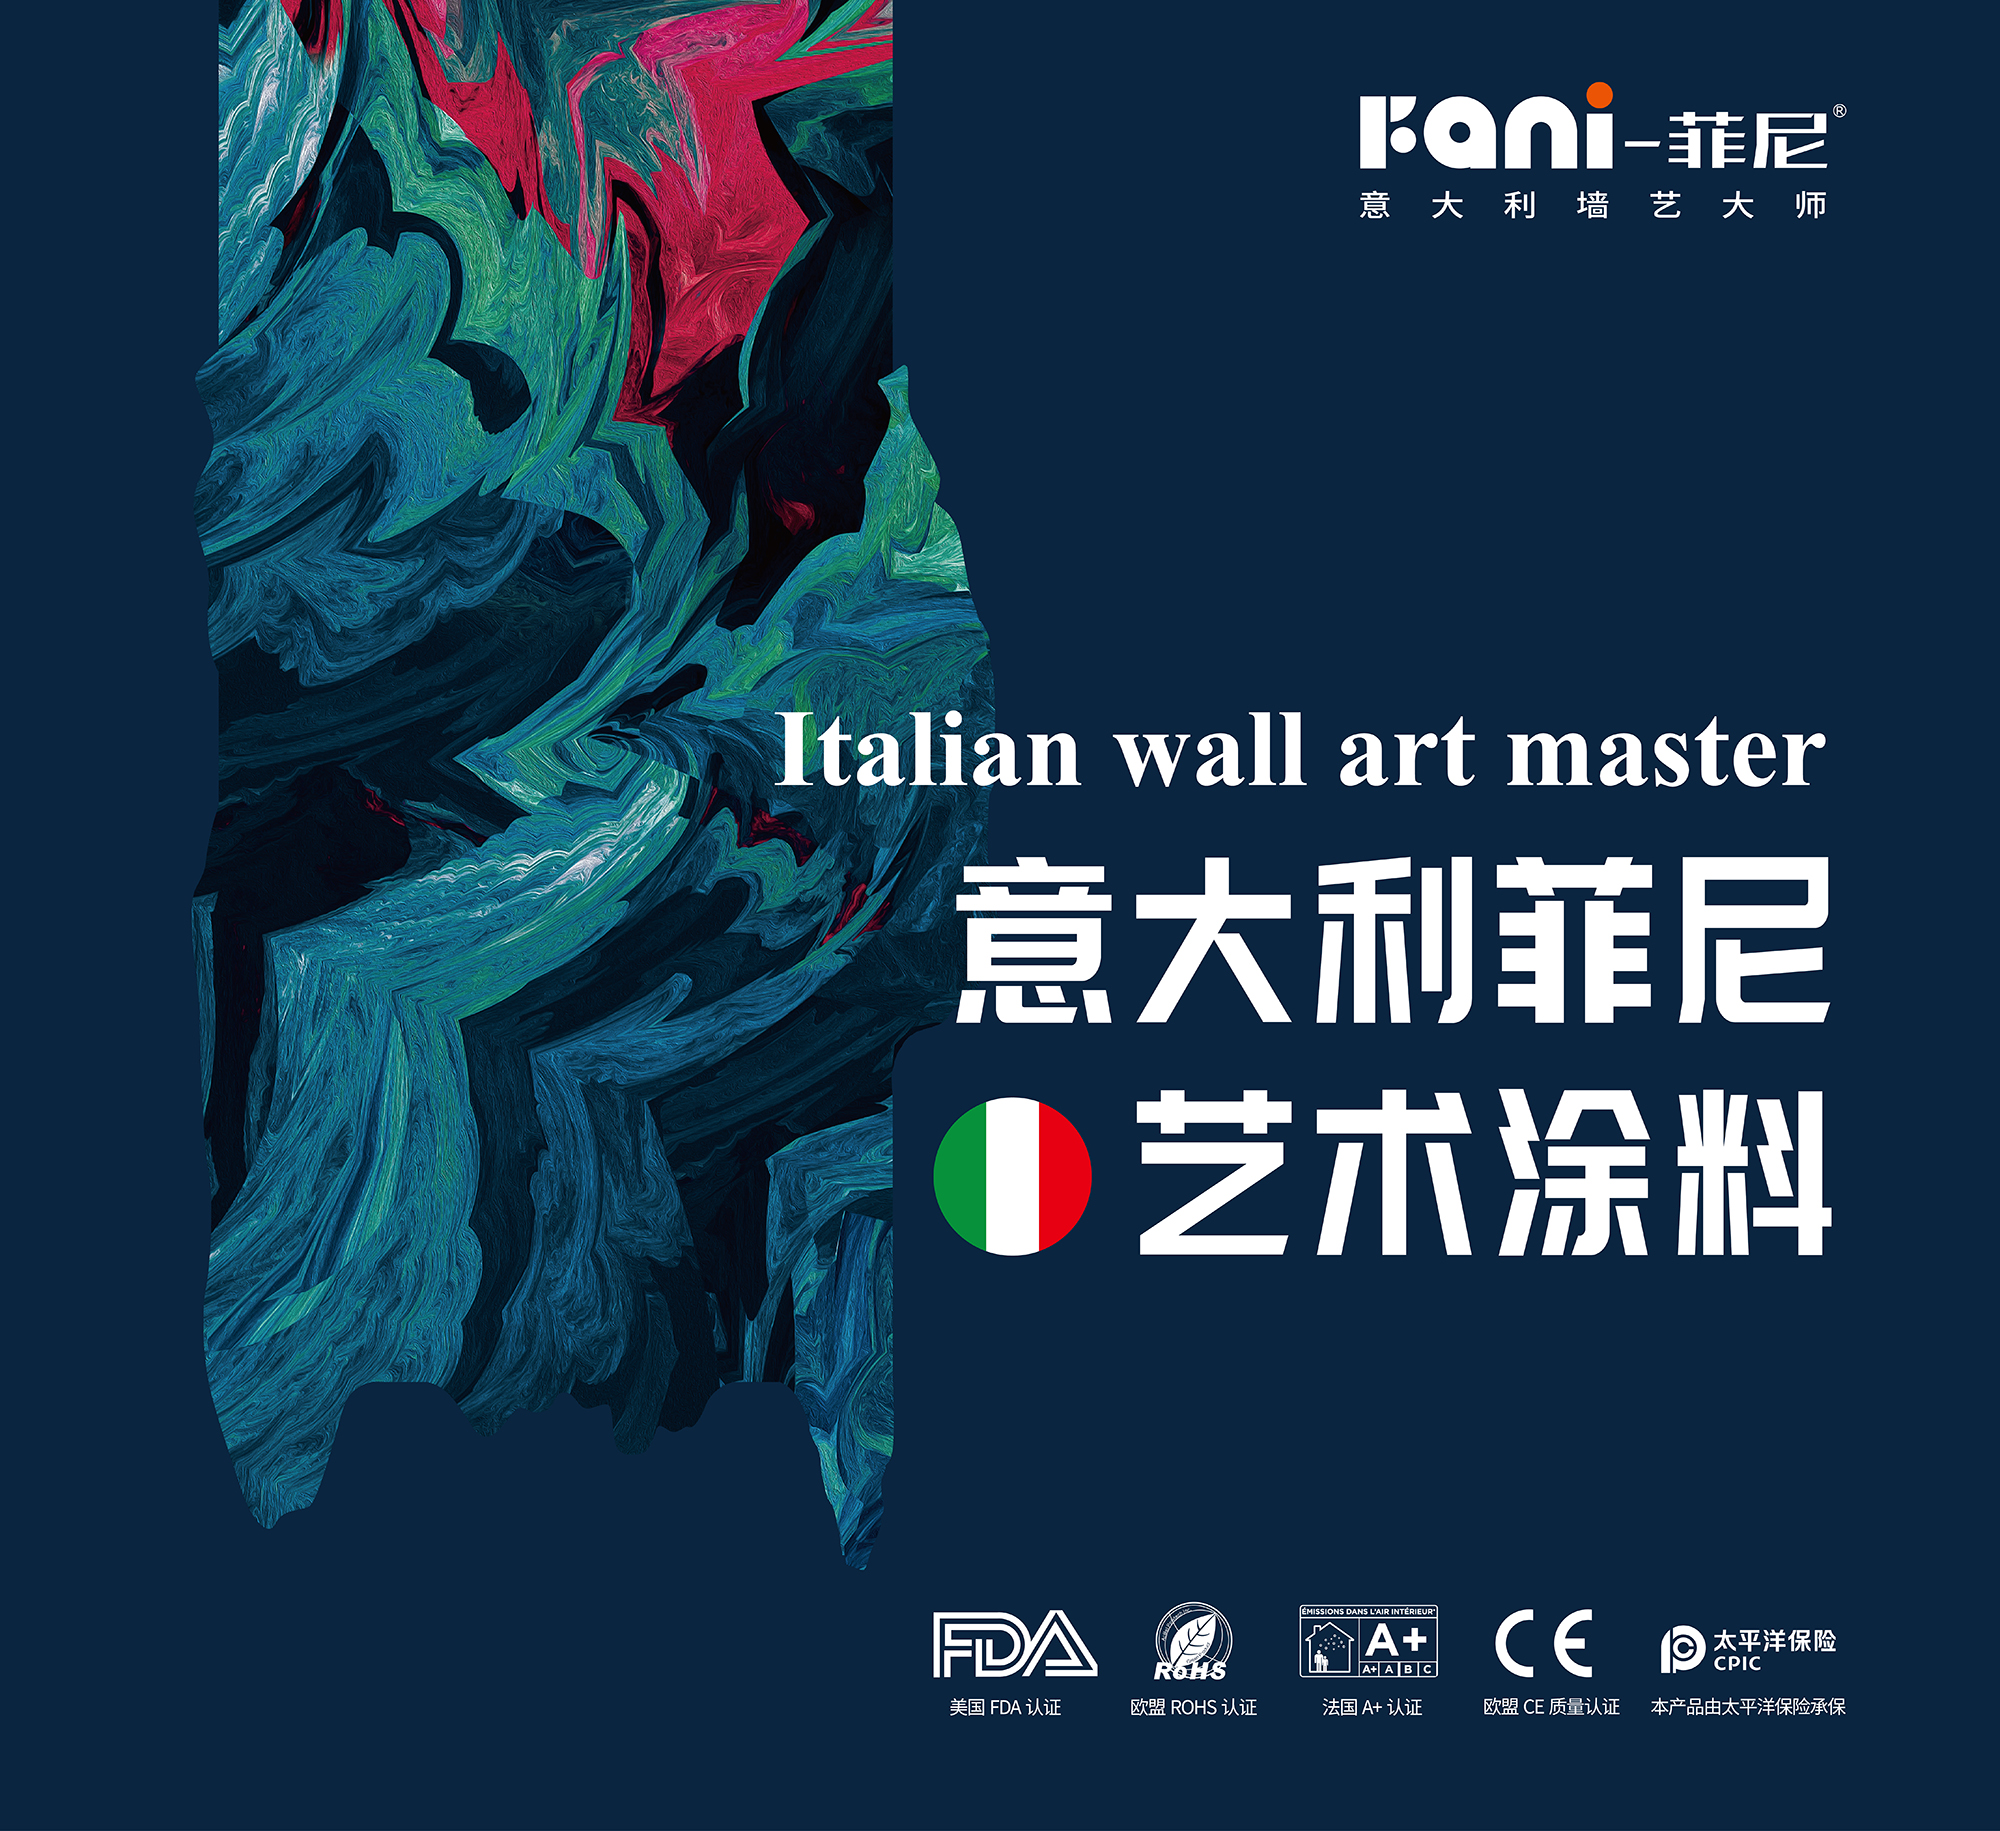 意大利菲尼艺术漆:艺术涂料一线品牌的缔造者